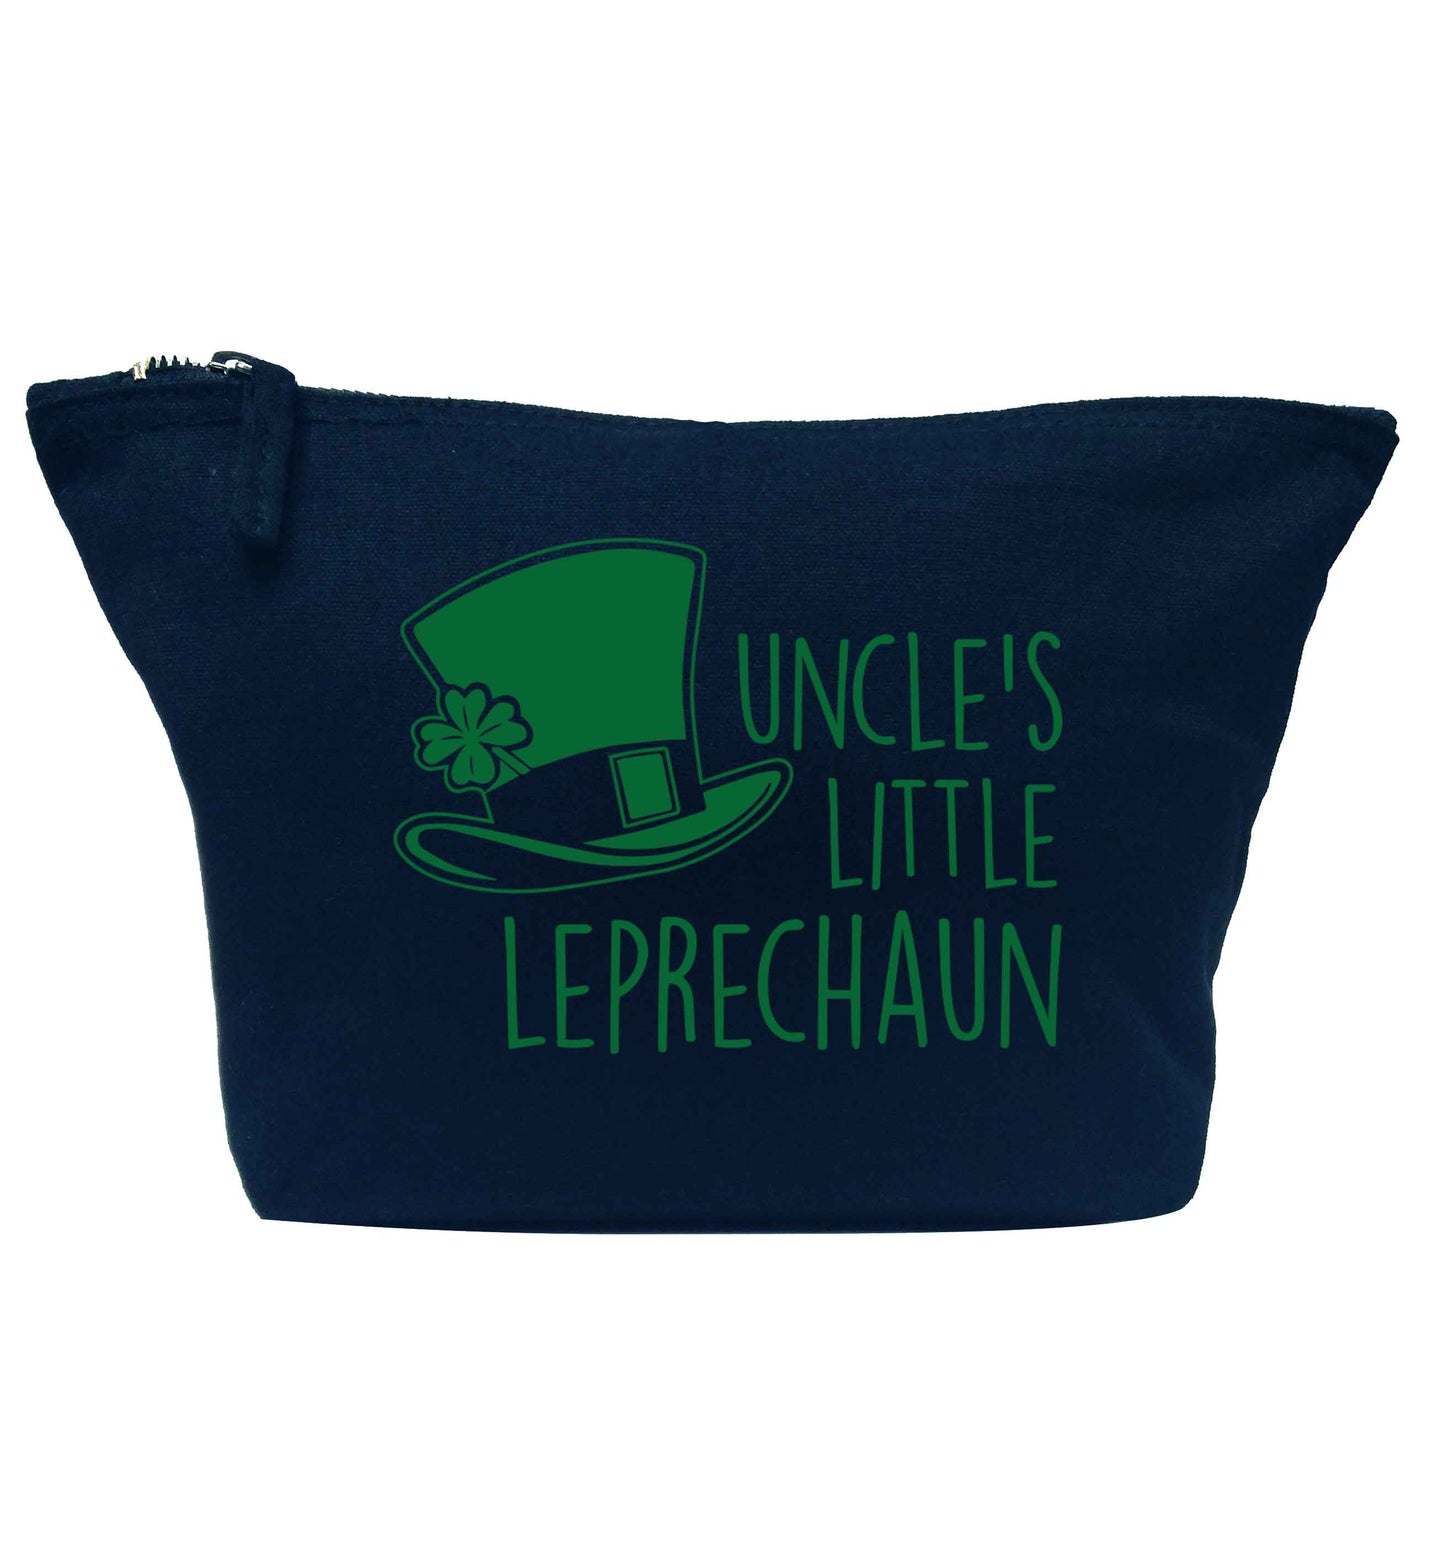 Uncles little leprechaun navy makeup bag